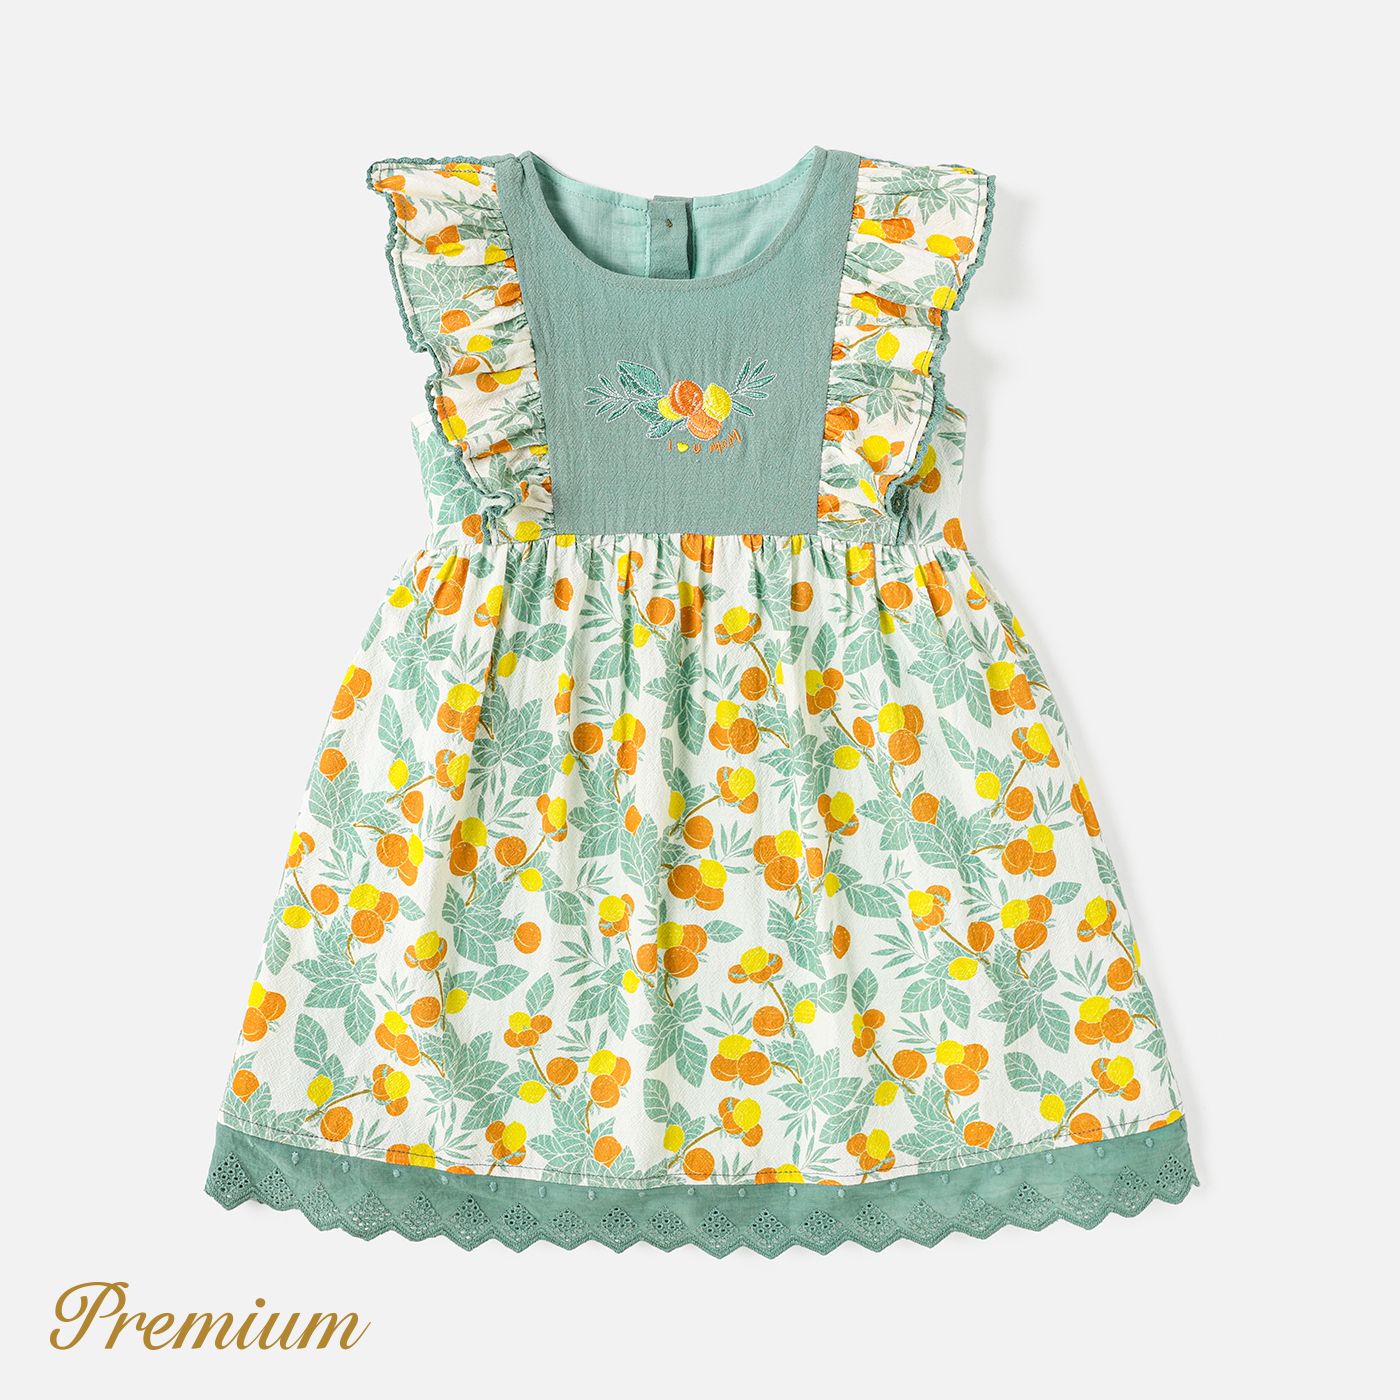 Toddler Girl 100% Cotton Allover Fruit And Vegetable Print Ruffled Sleeveless Dress